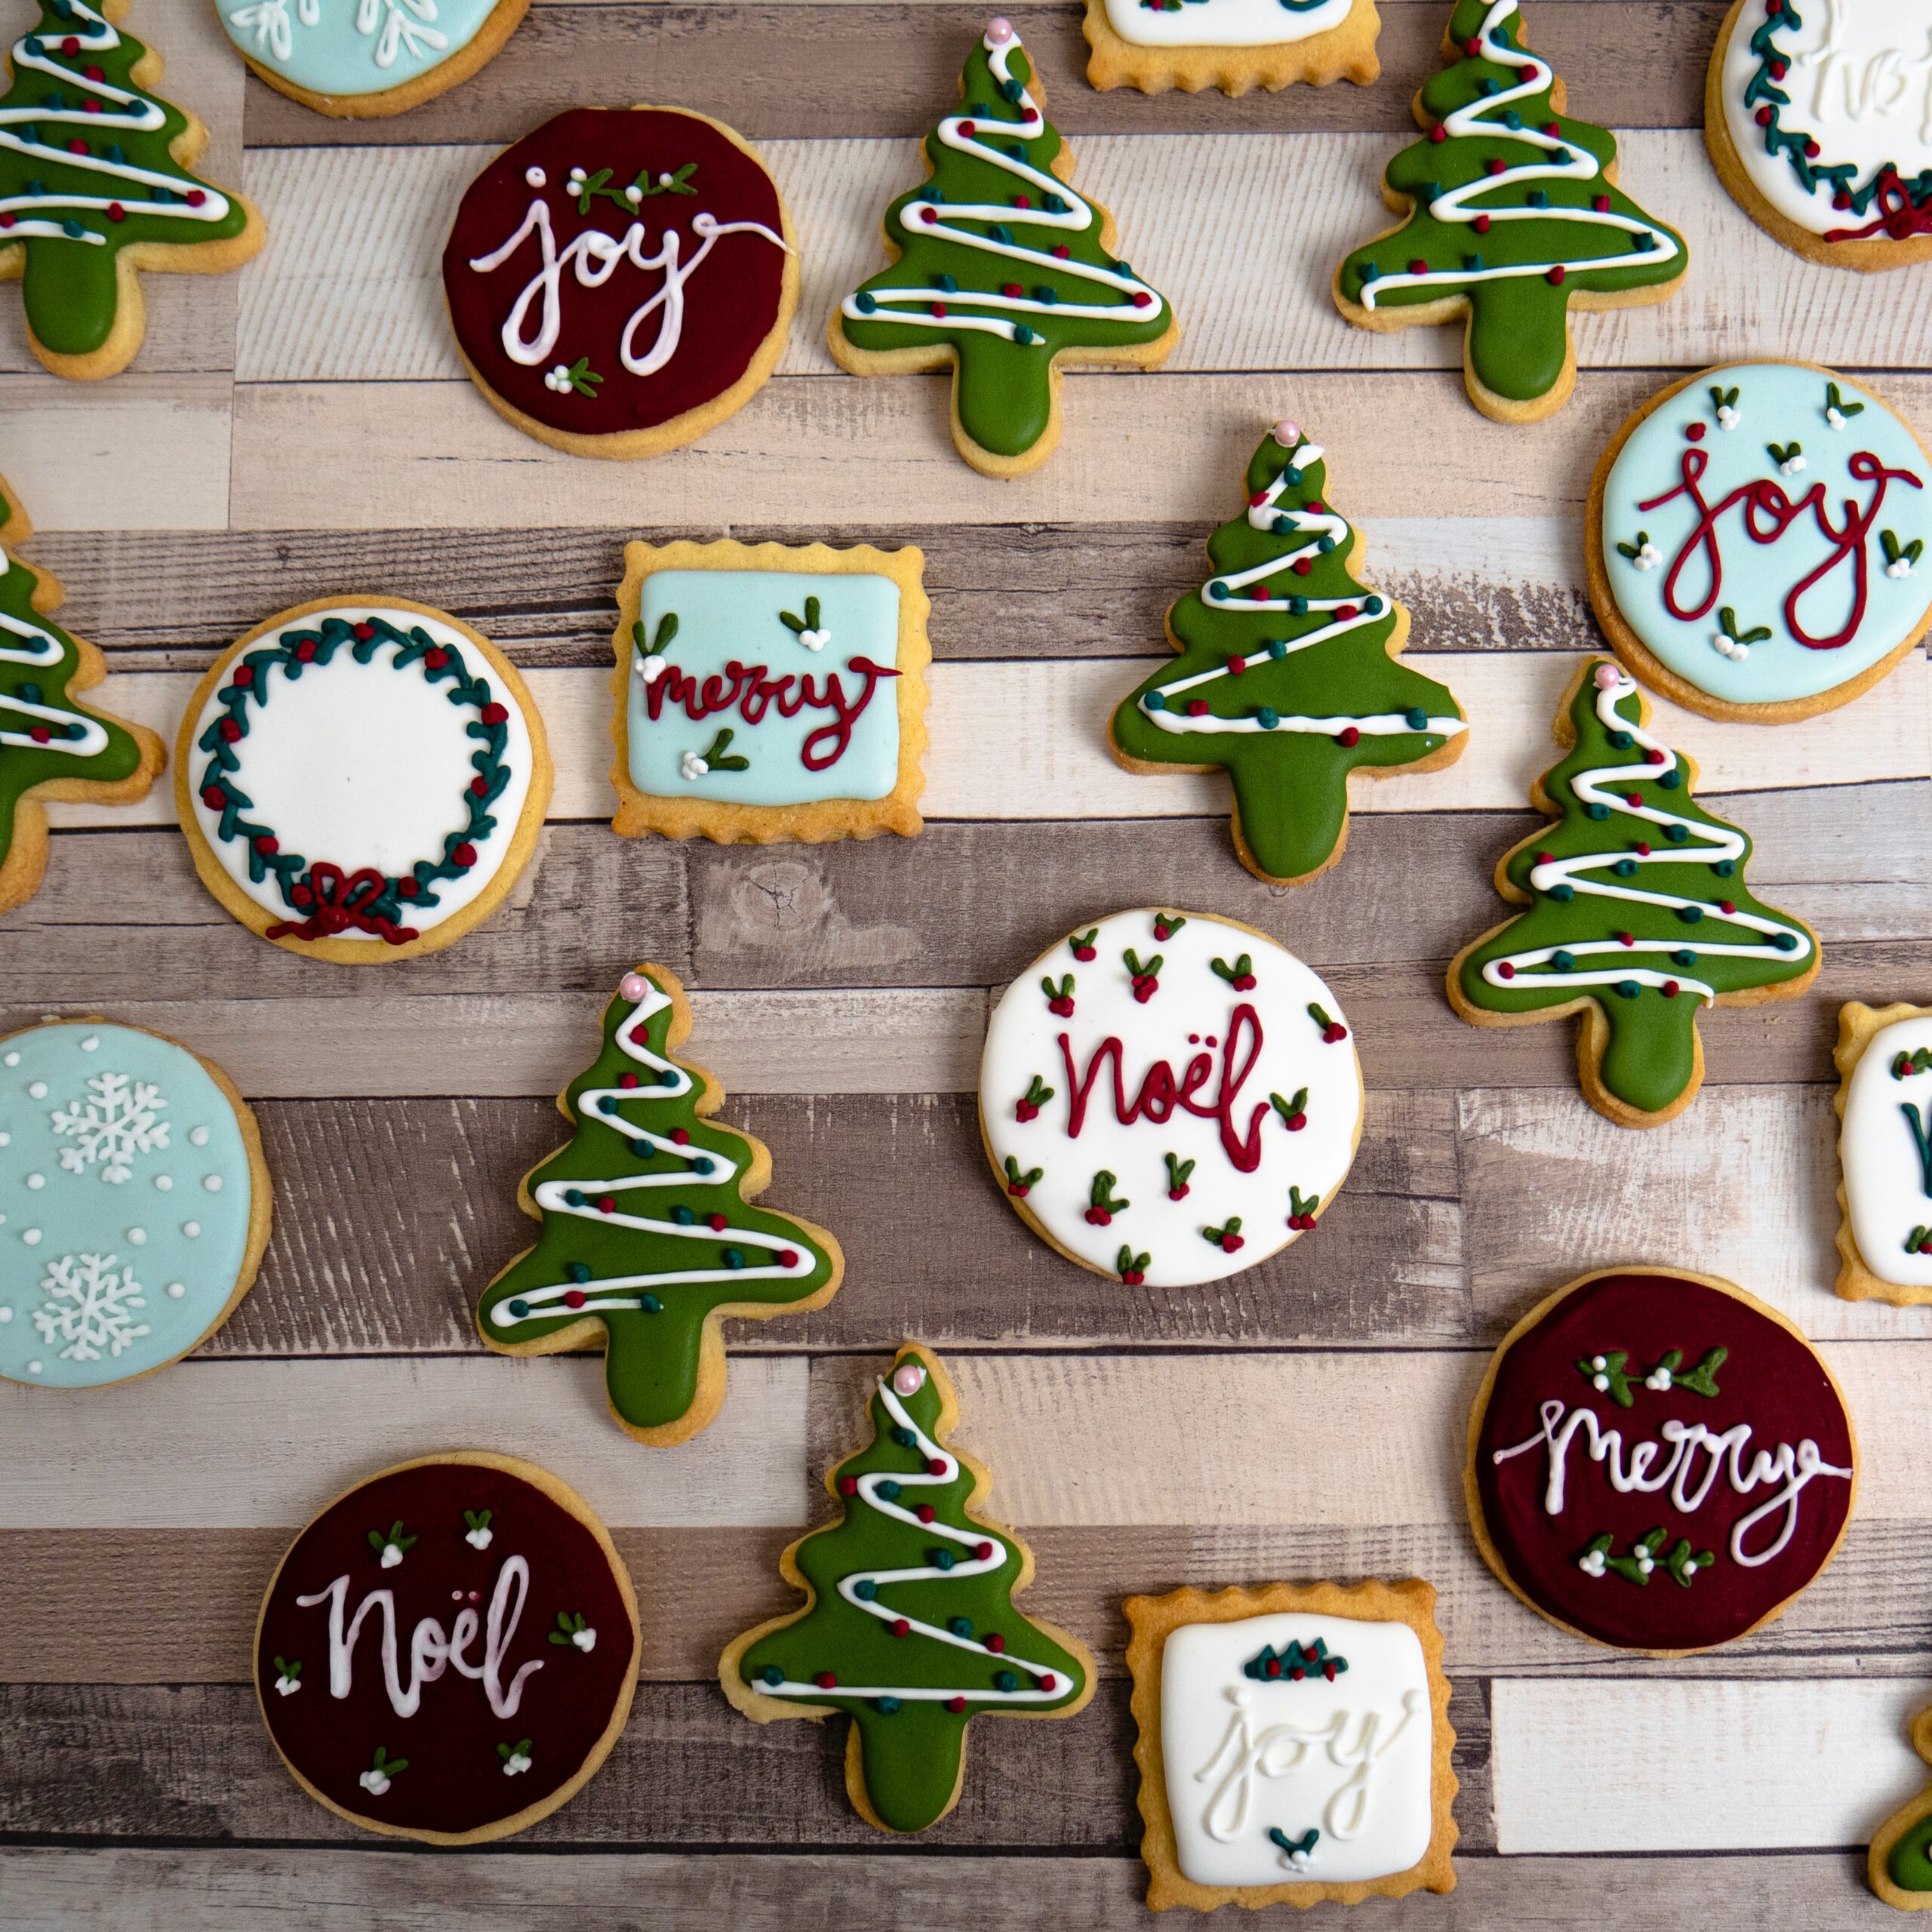 Des biscuits pour les fêtes de fin d'année avec différentes décorations et de recettes